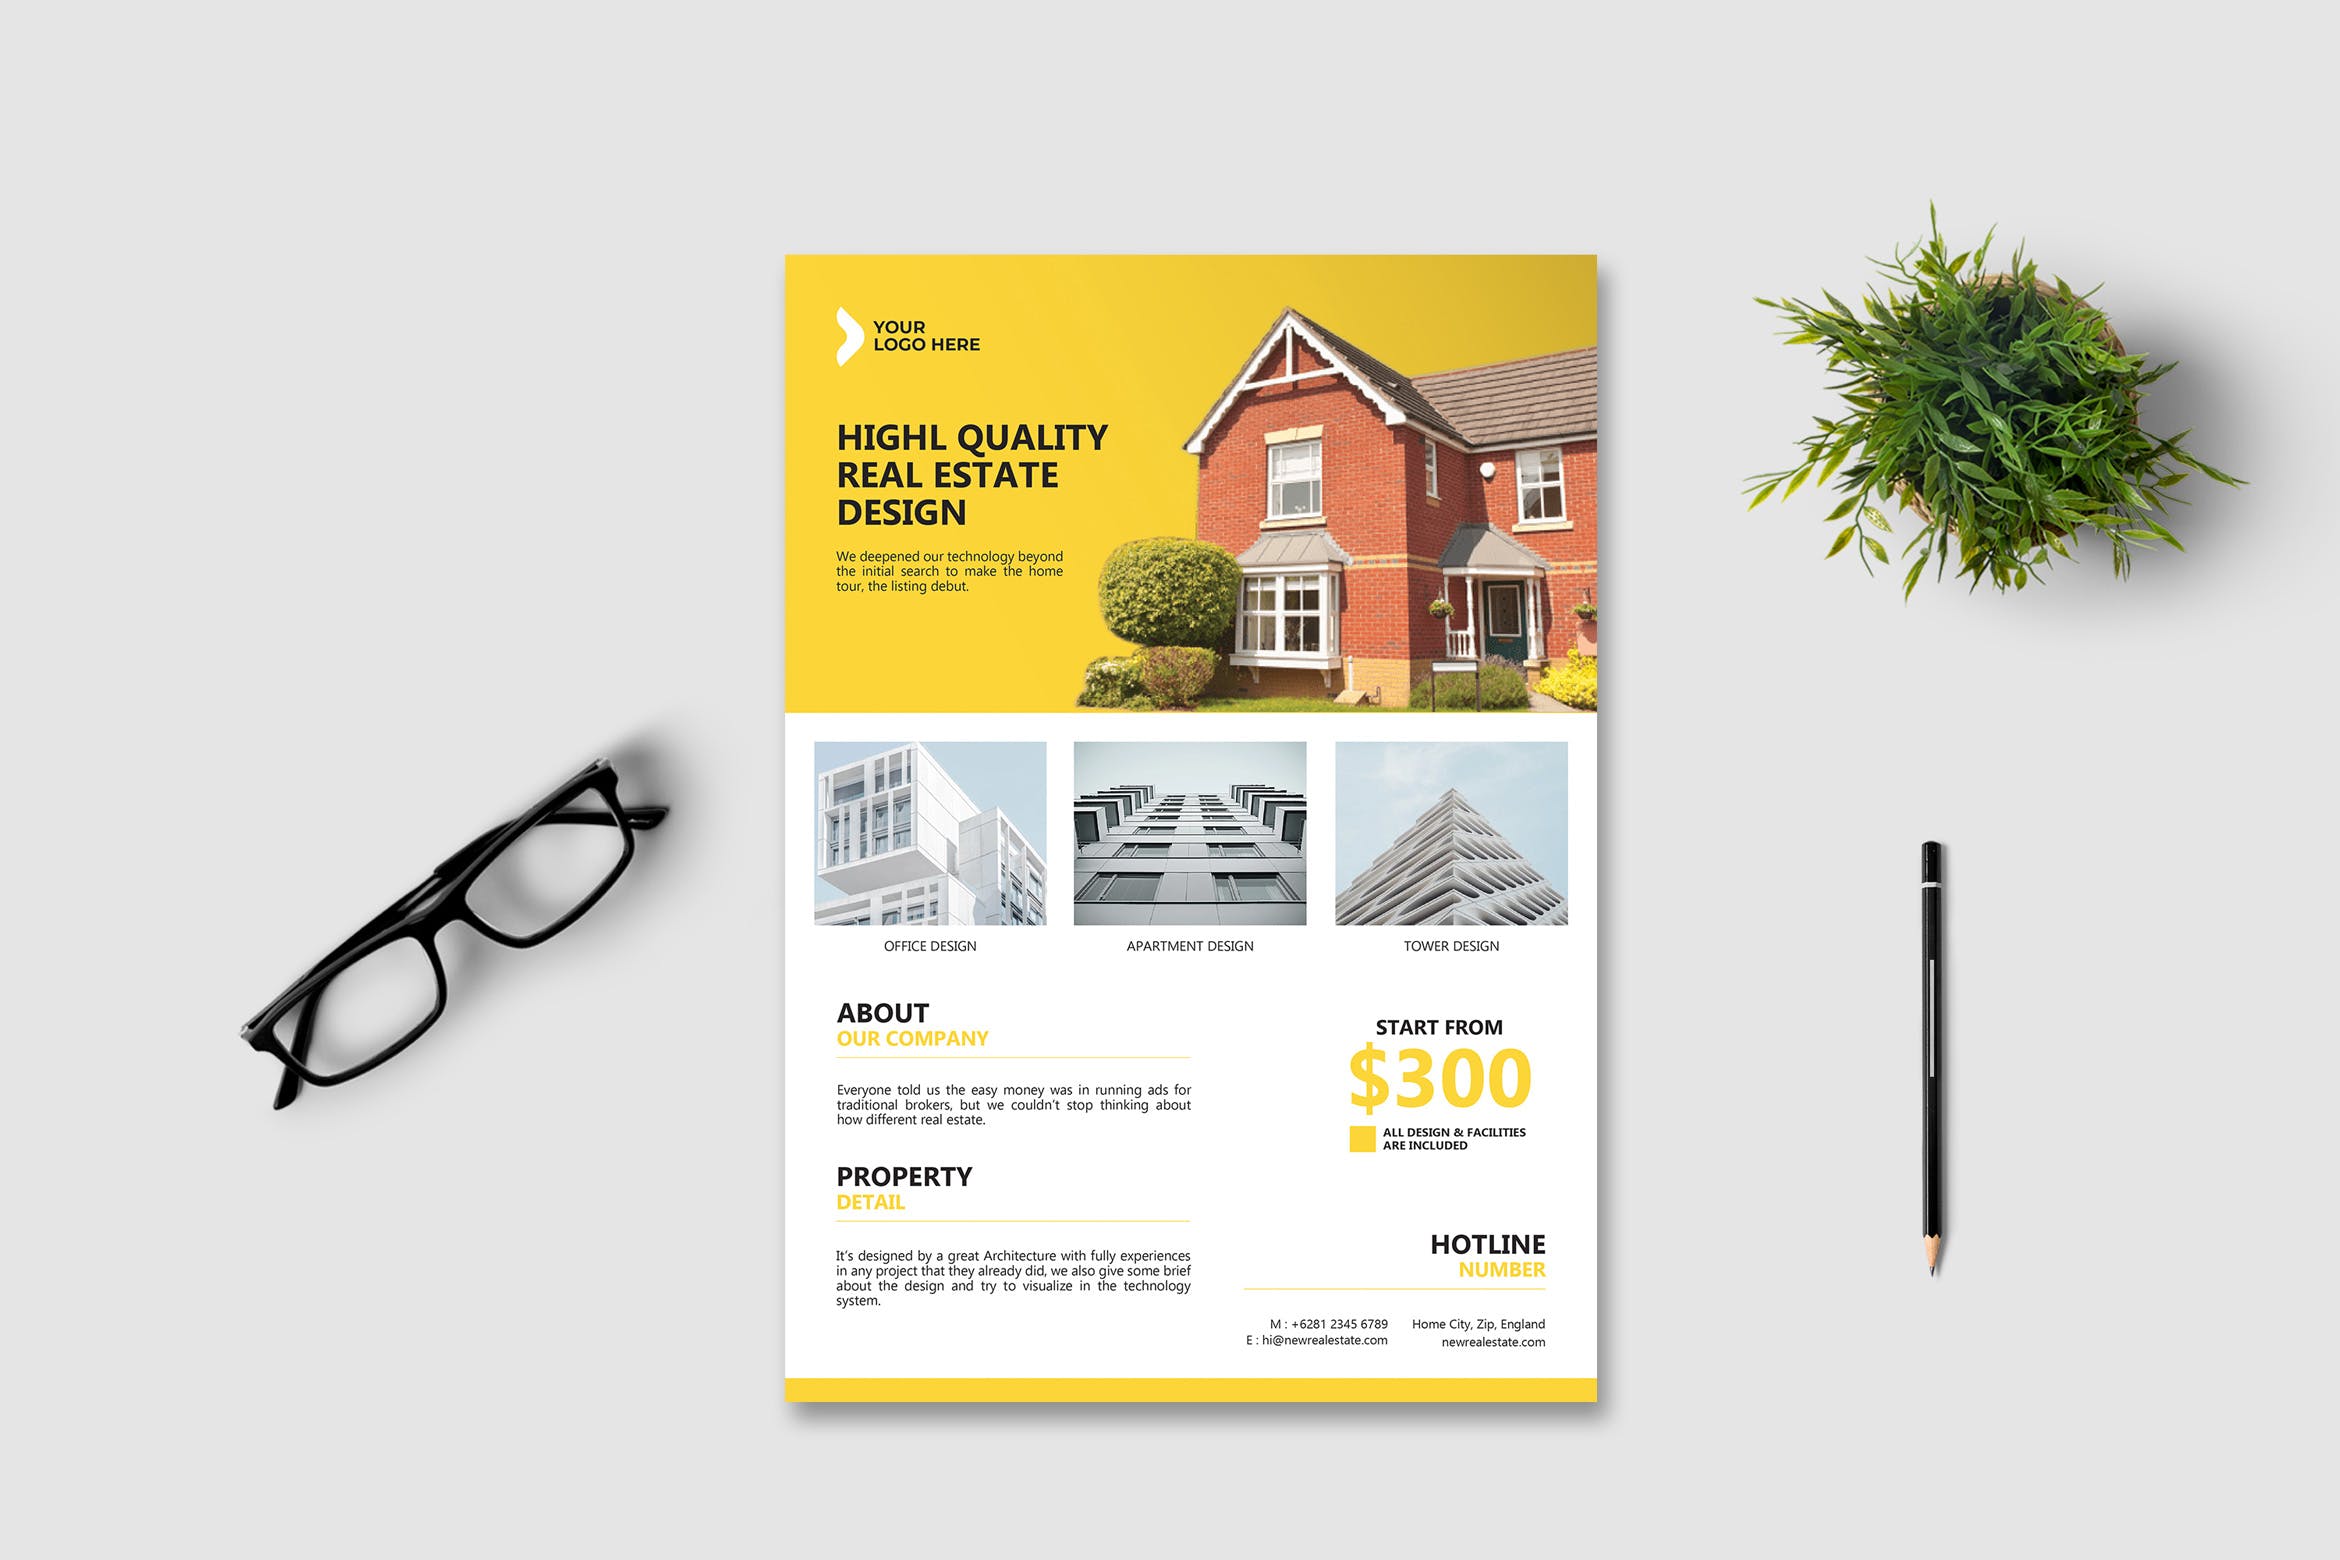 房产销售/中介主题海报传单素材库精选PSD模板v2 Real Estate Flyer Vol. 2插图